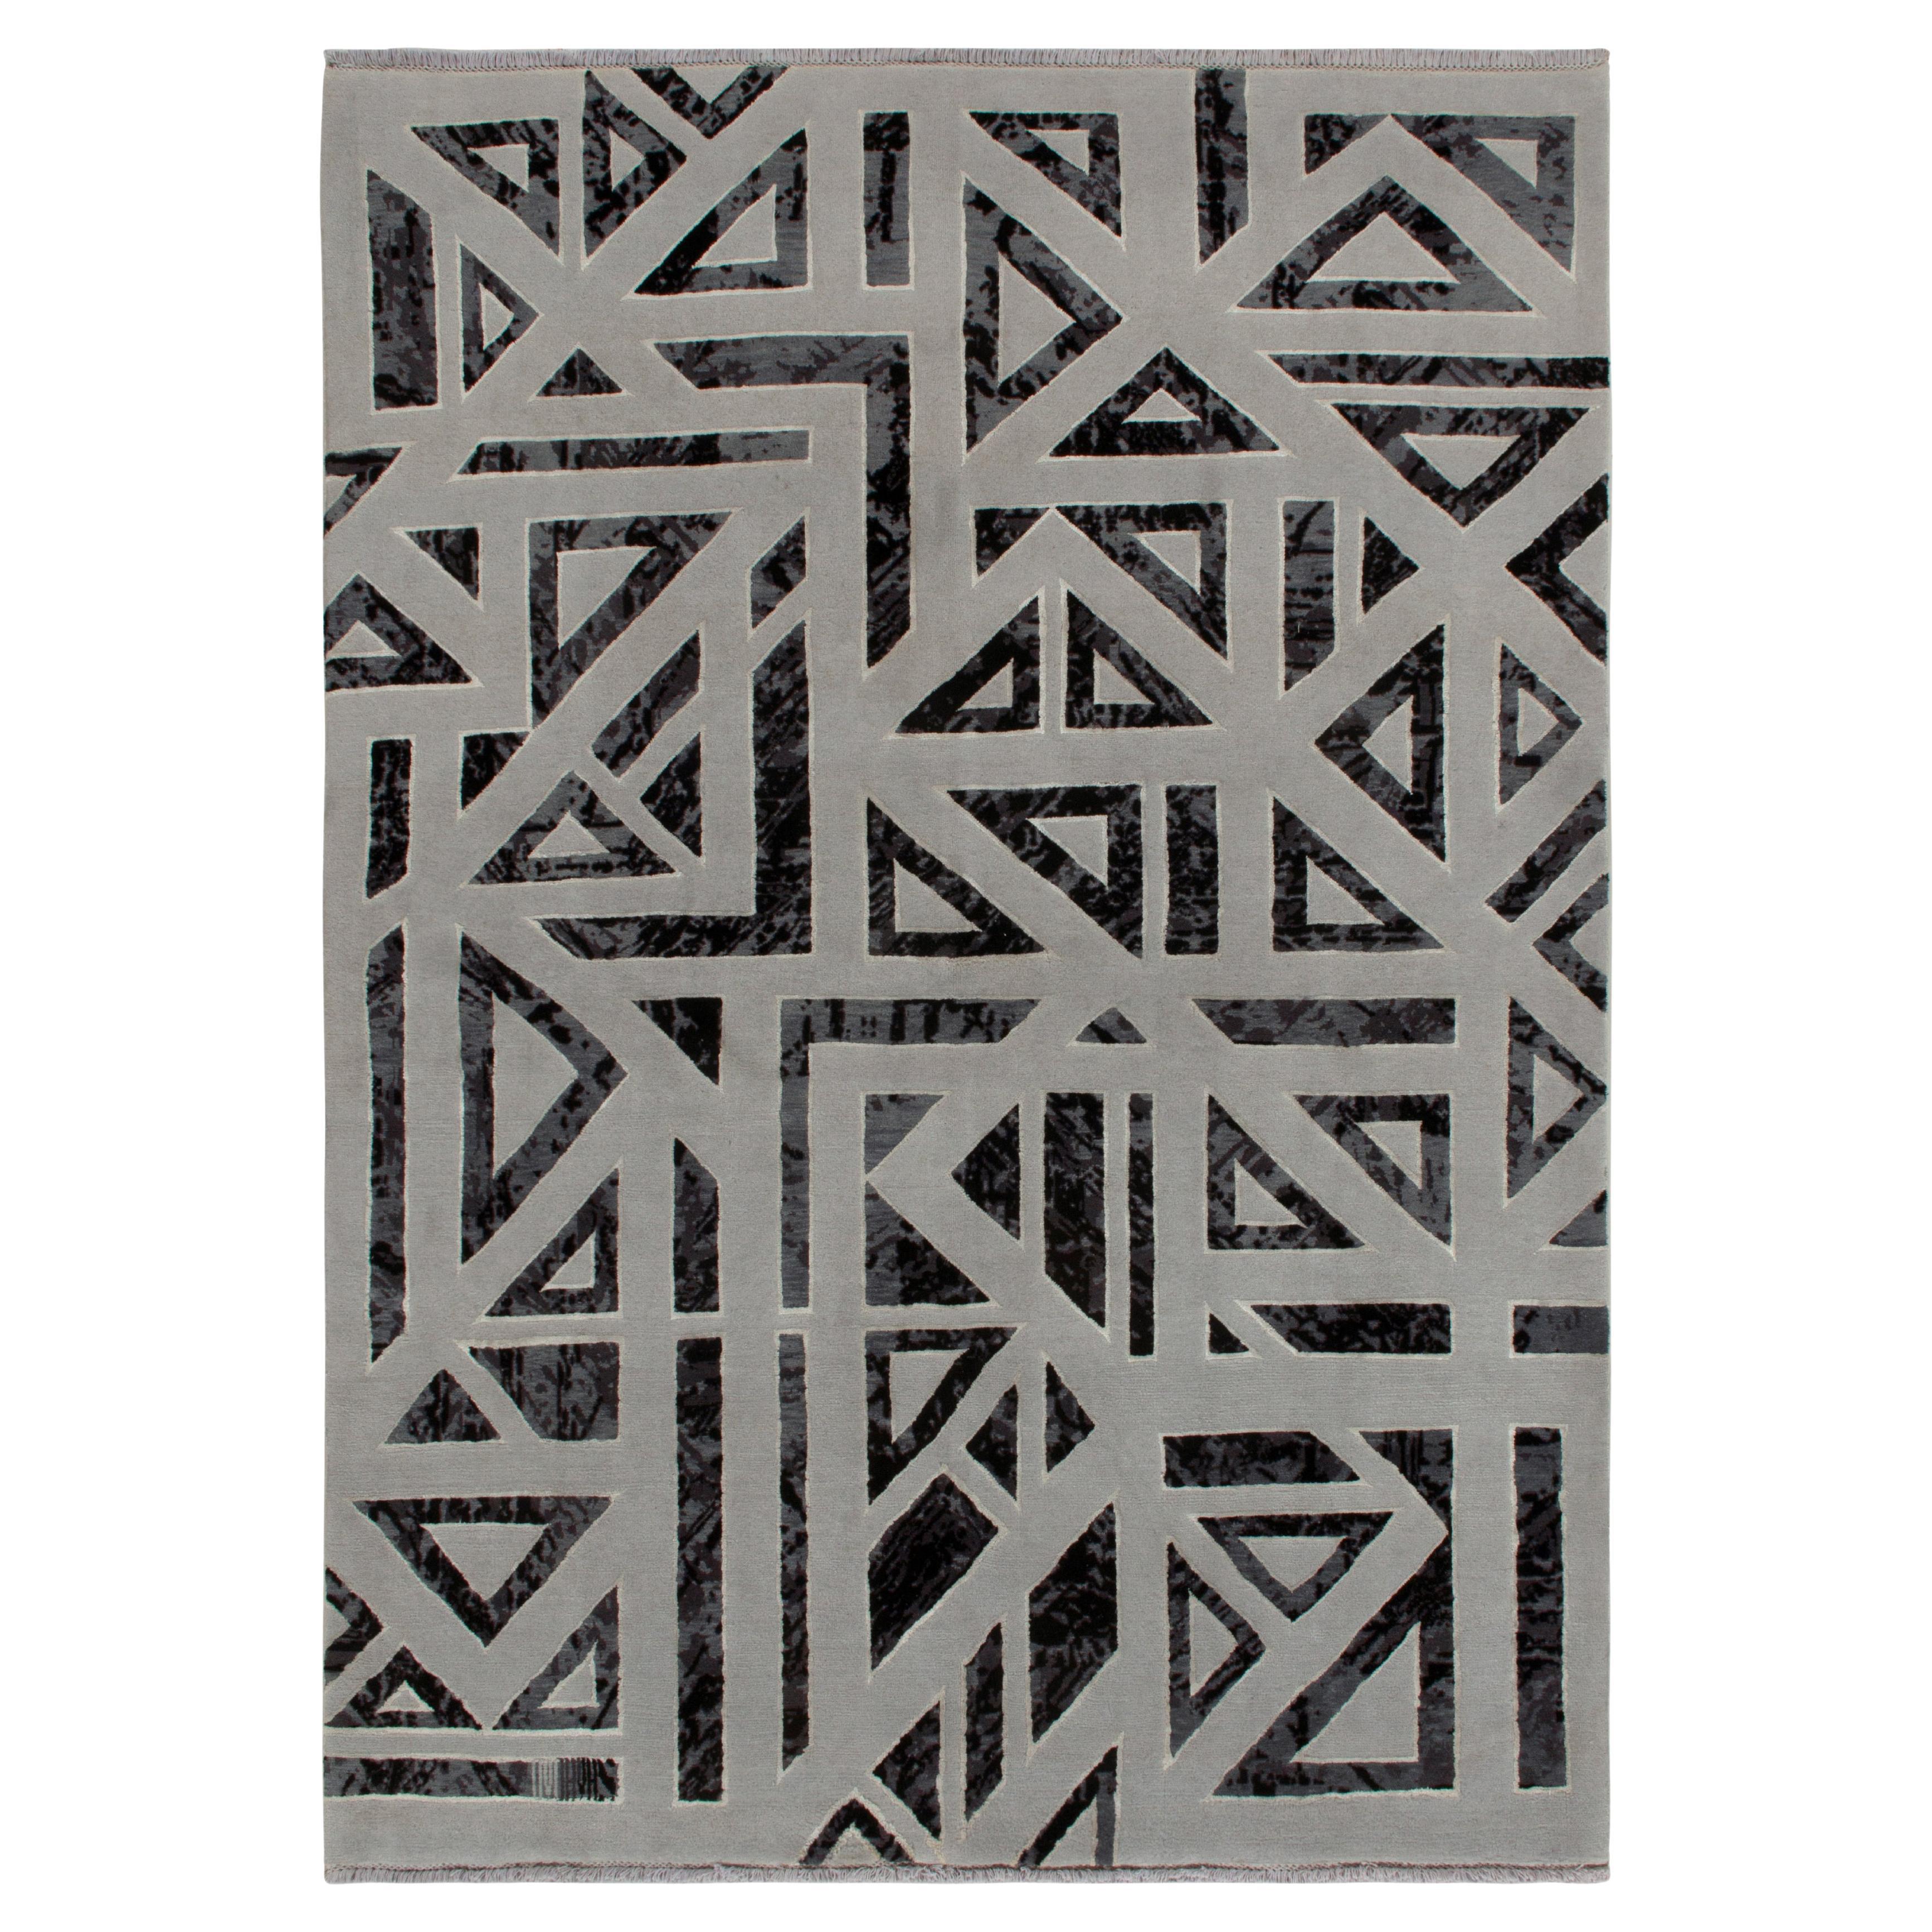 Moderner Teppich im Art-Déco-Stil von Teppich & Kilims in Grau, Schwarz mit geometrischem Muster